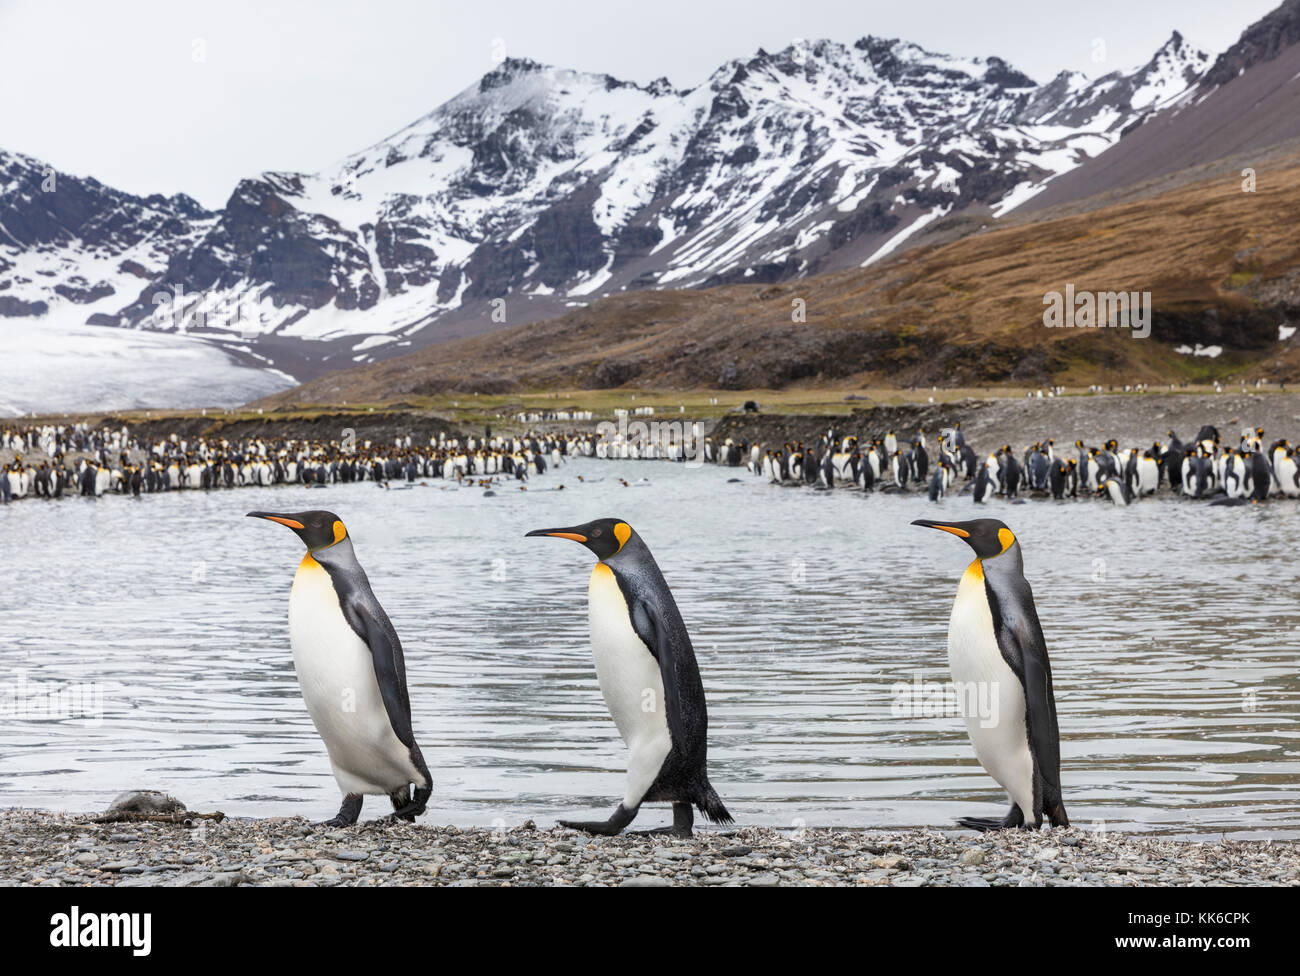 Trois manchots très grands qui marchent sur la plage se mêlent à la colonie de pingouins, au glacier et aux montagnes enneigées de la baie de St Andrew, sur l'île de Géorgie du Sud, à l'arrière-plan Banque D'Images